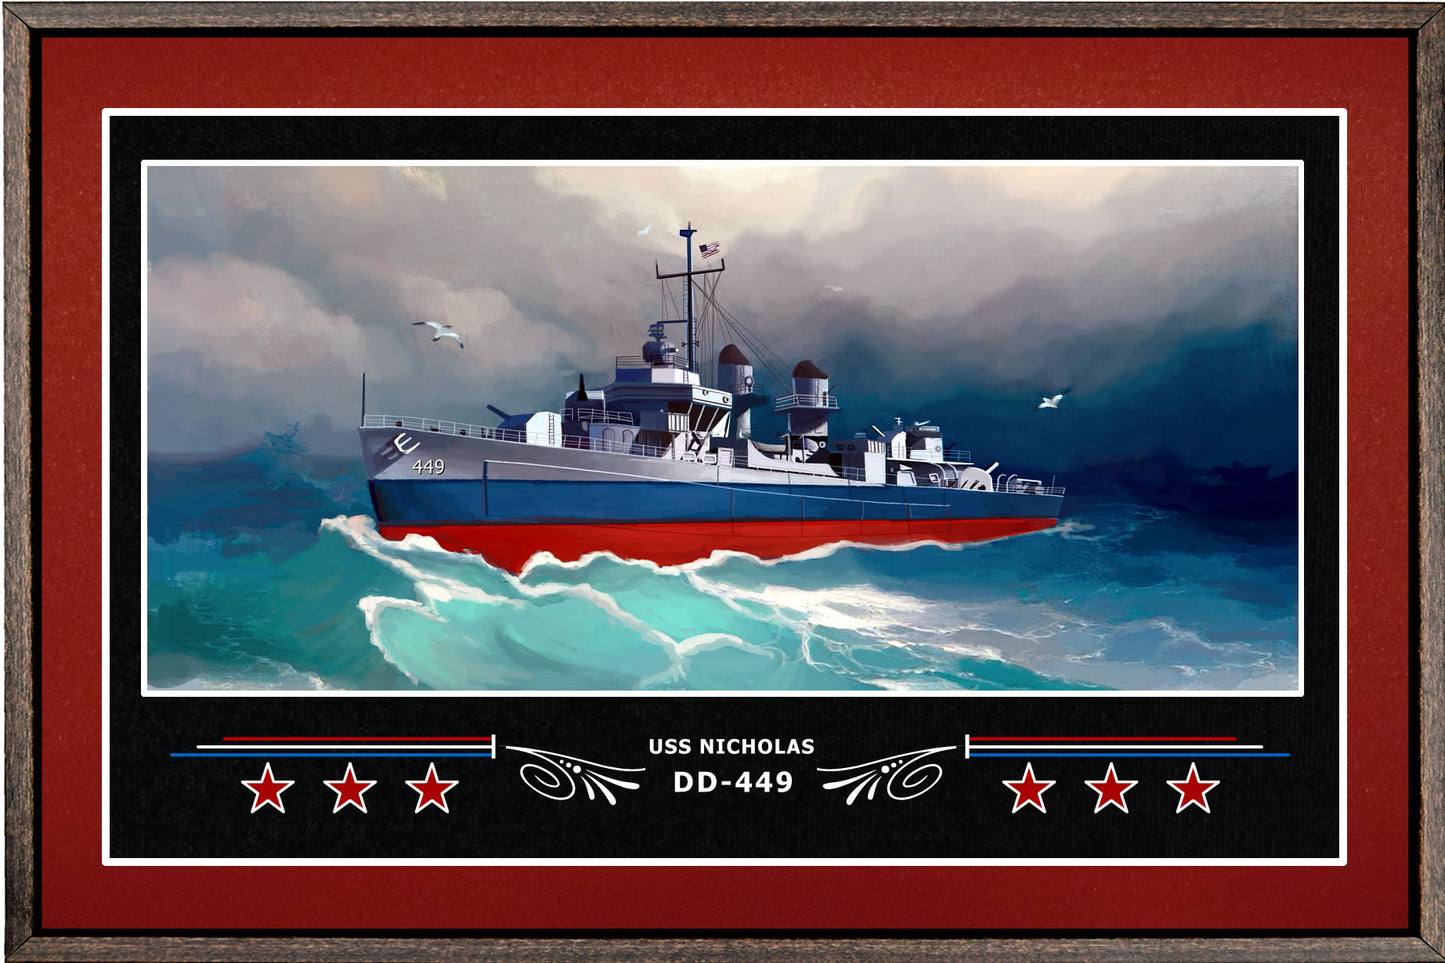 USS NICHOLAS DD 449 BOX FRAMED CANVAS ART BURGUNDY